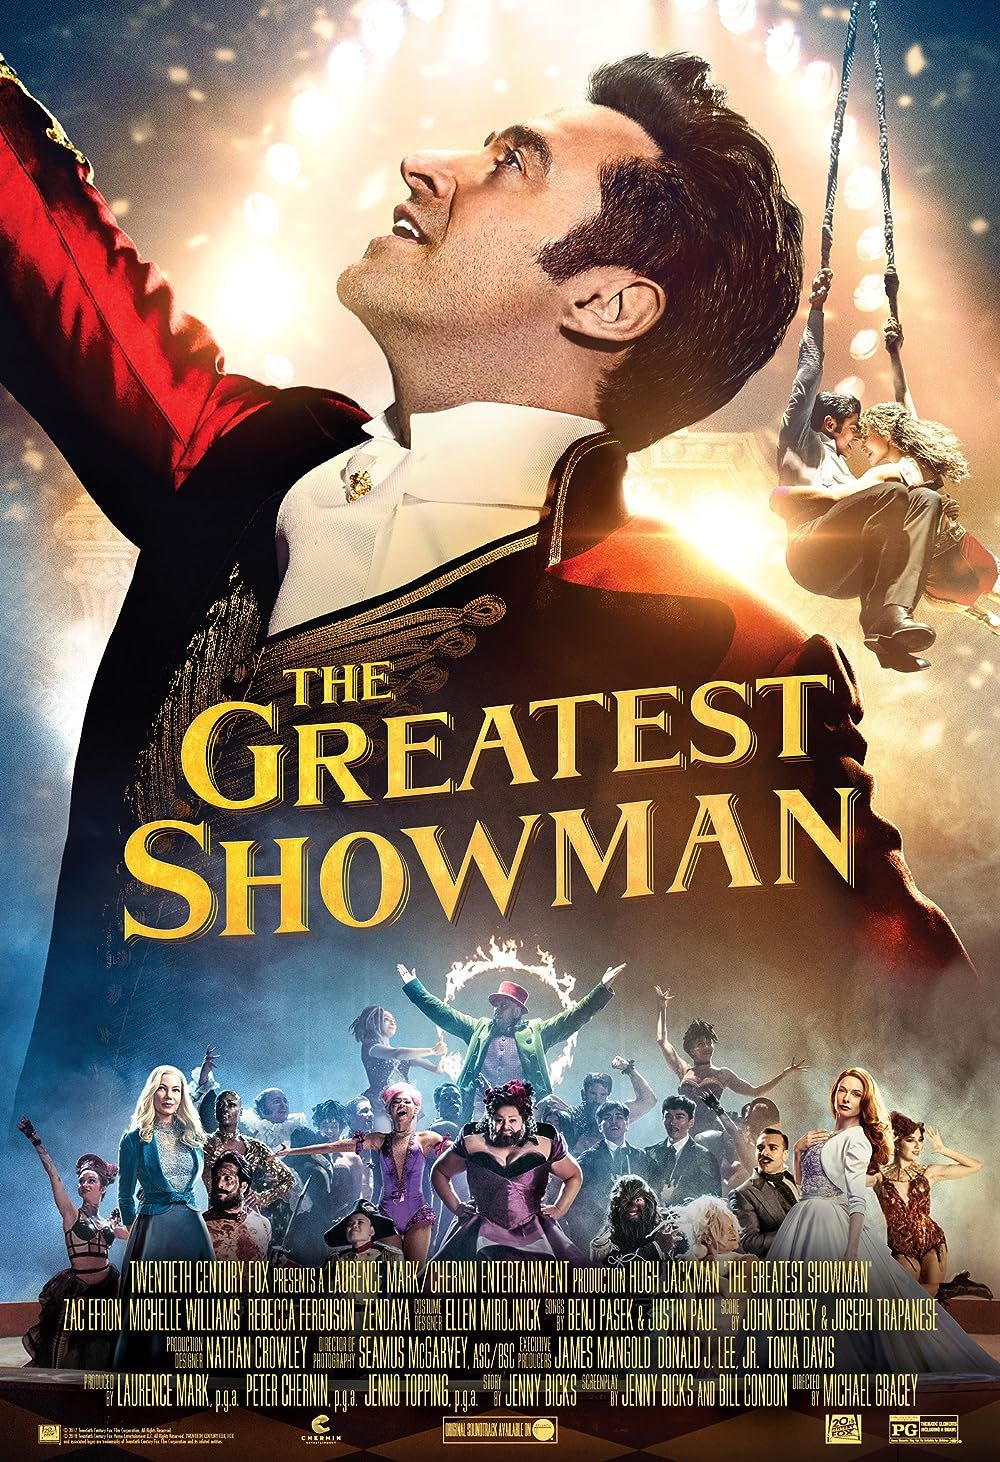 Hugh Jackman no topo e o resto do elenco de The Greatest Showman na parte inferior do pôster do filme